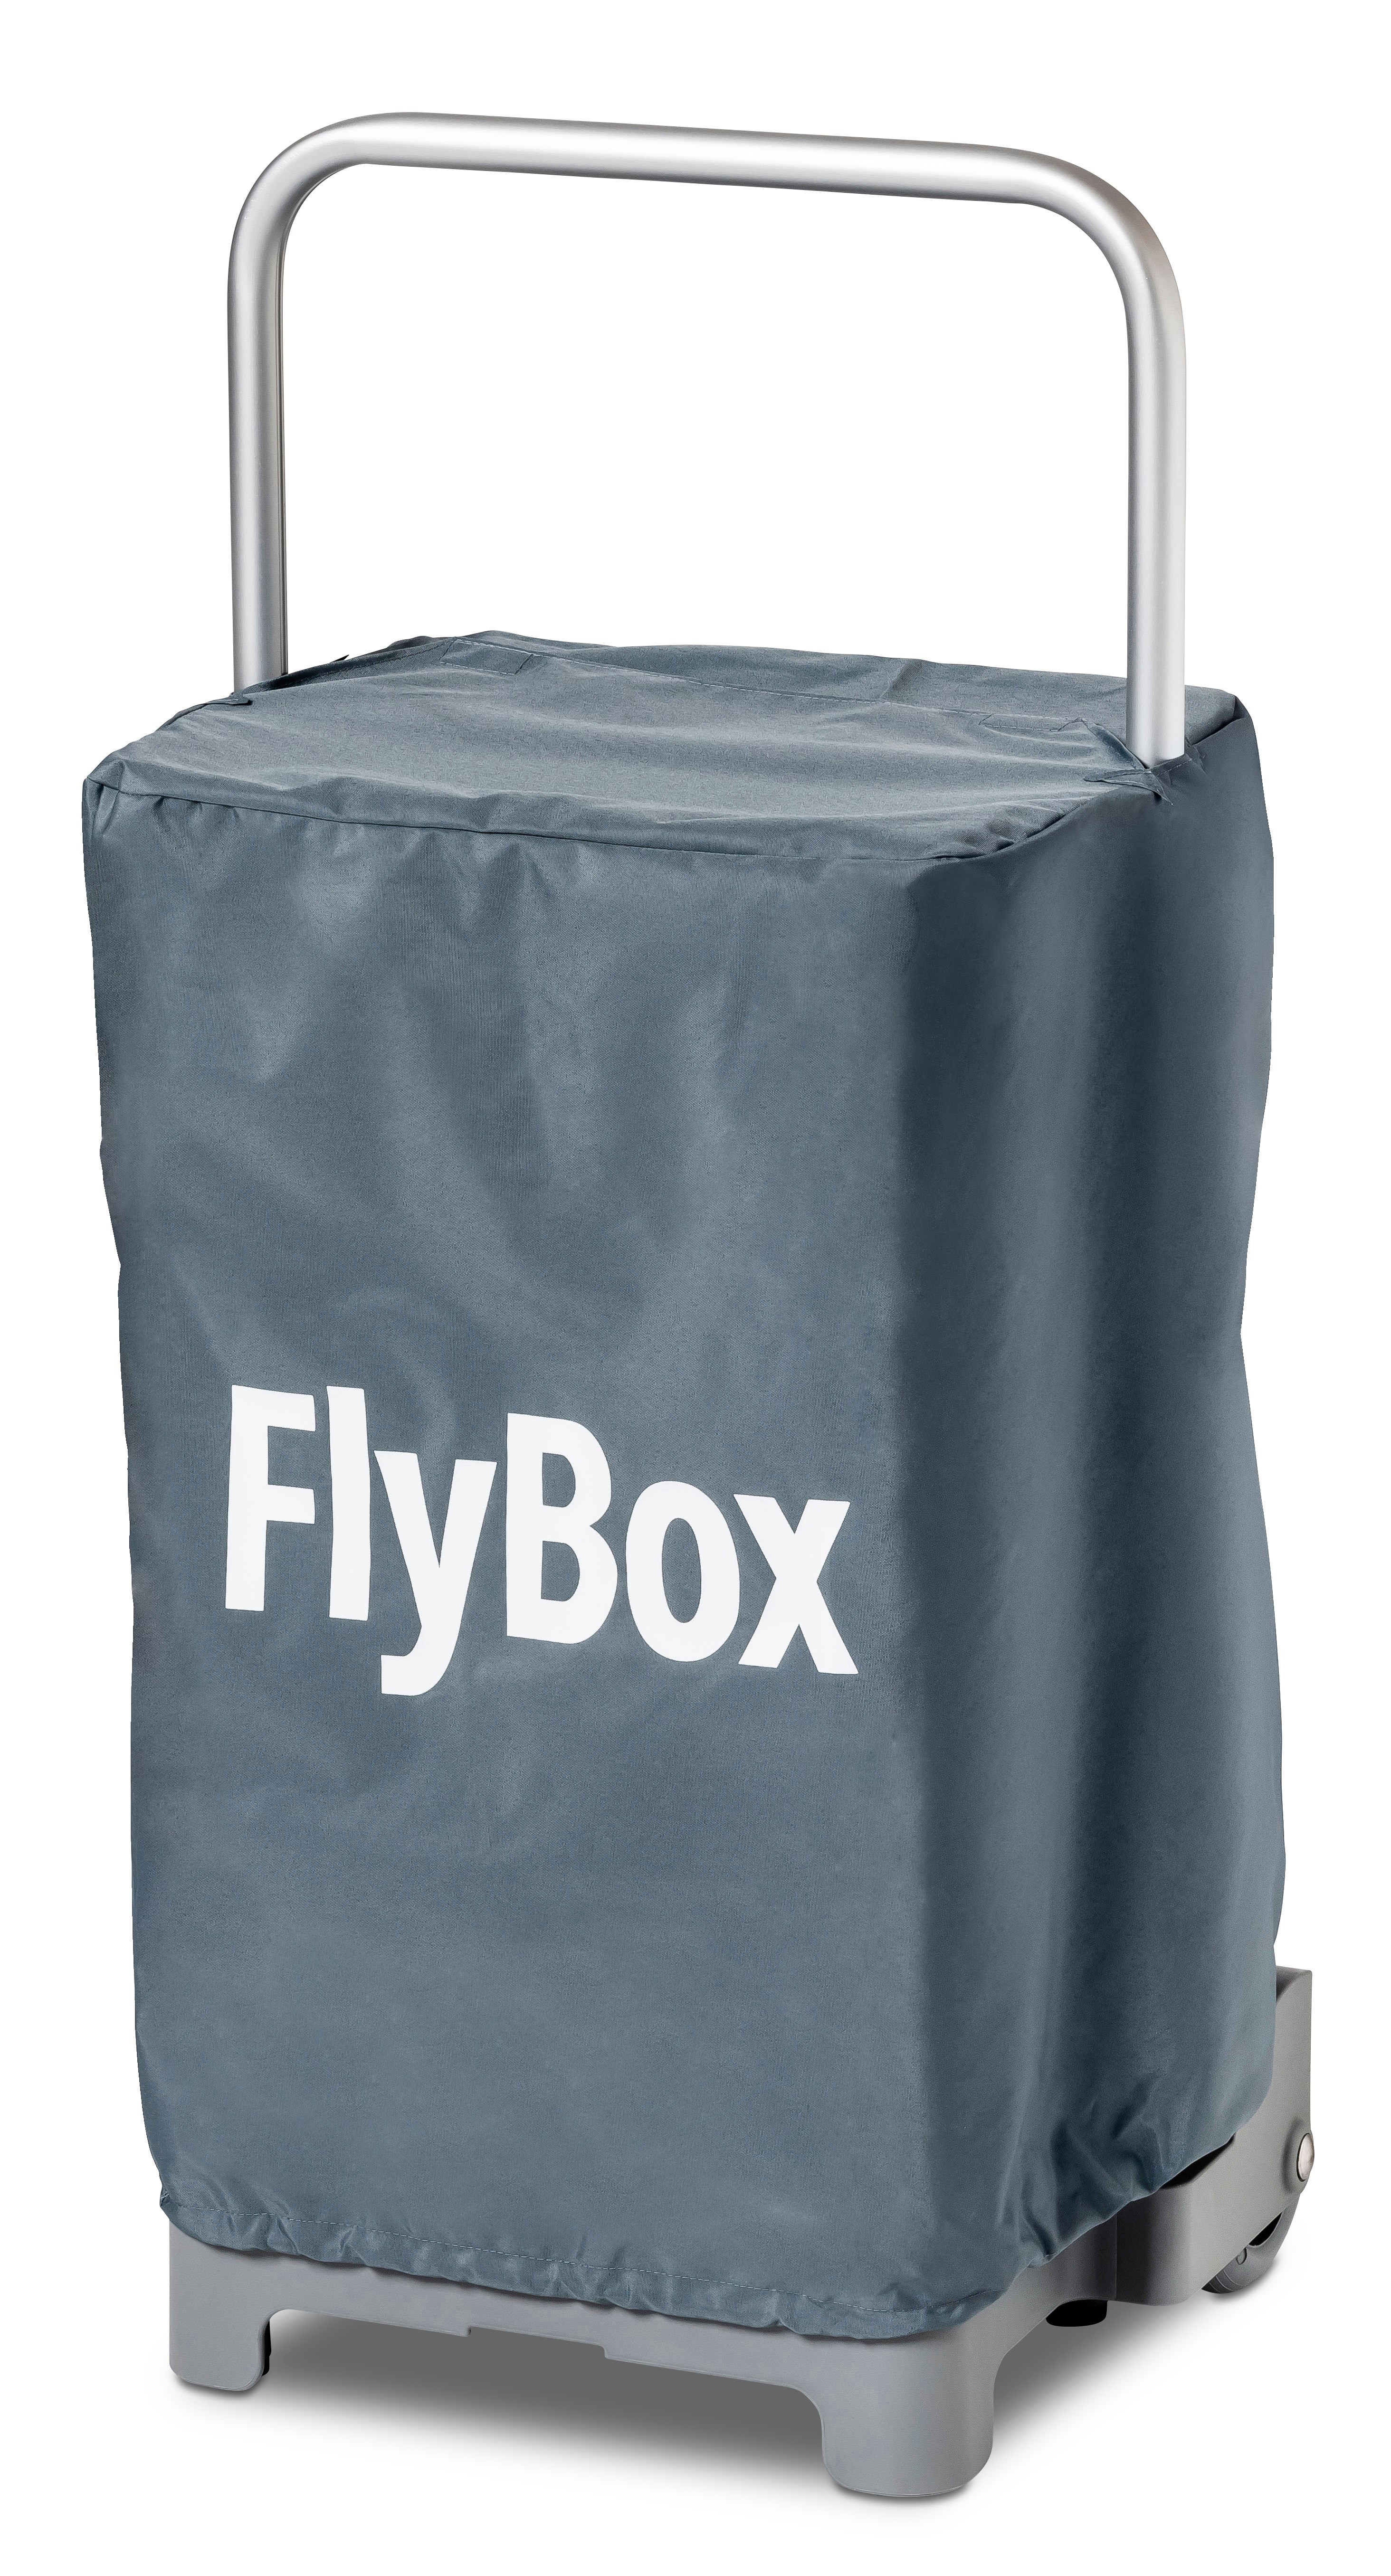 Flybox, Mobil Arbejdsstation, NSK sug